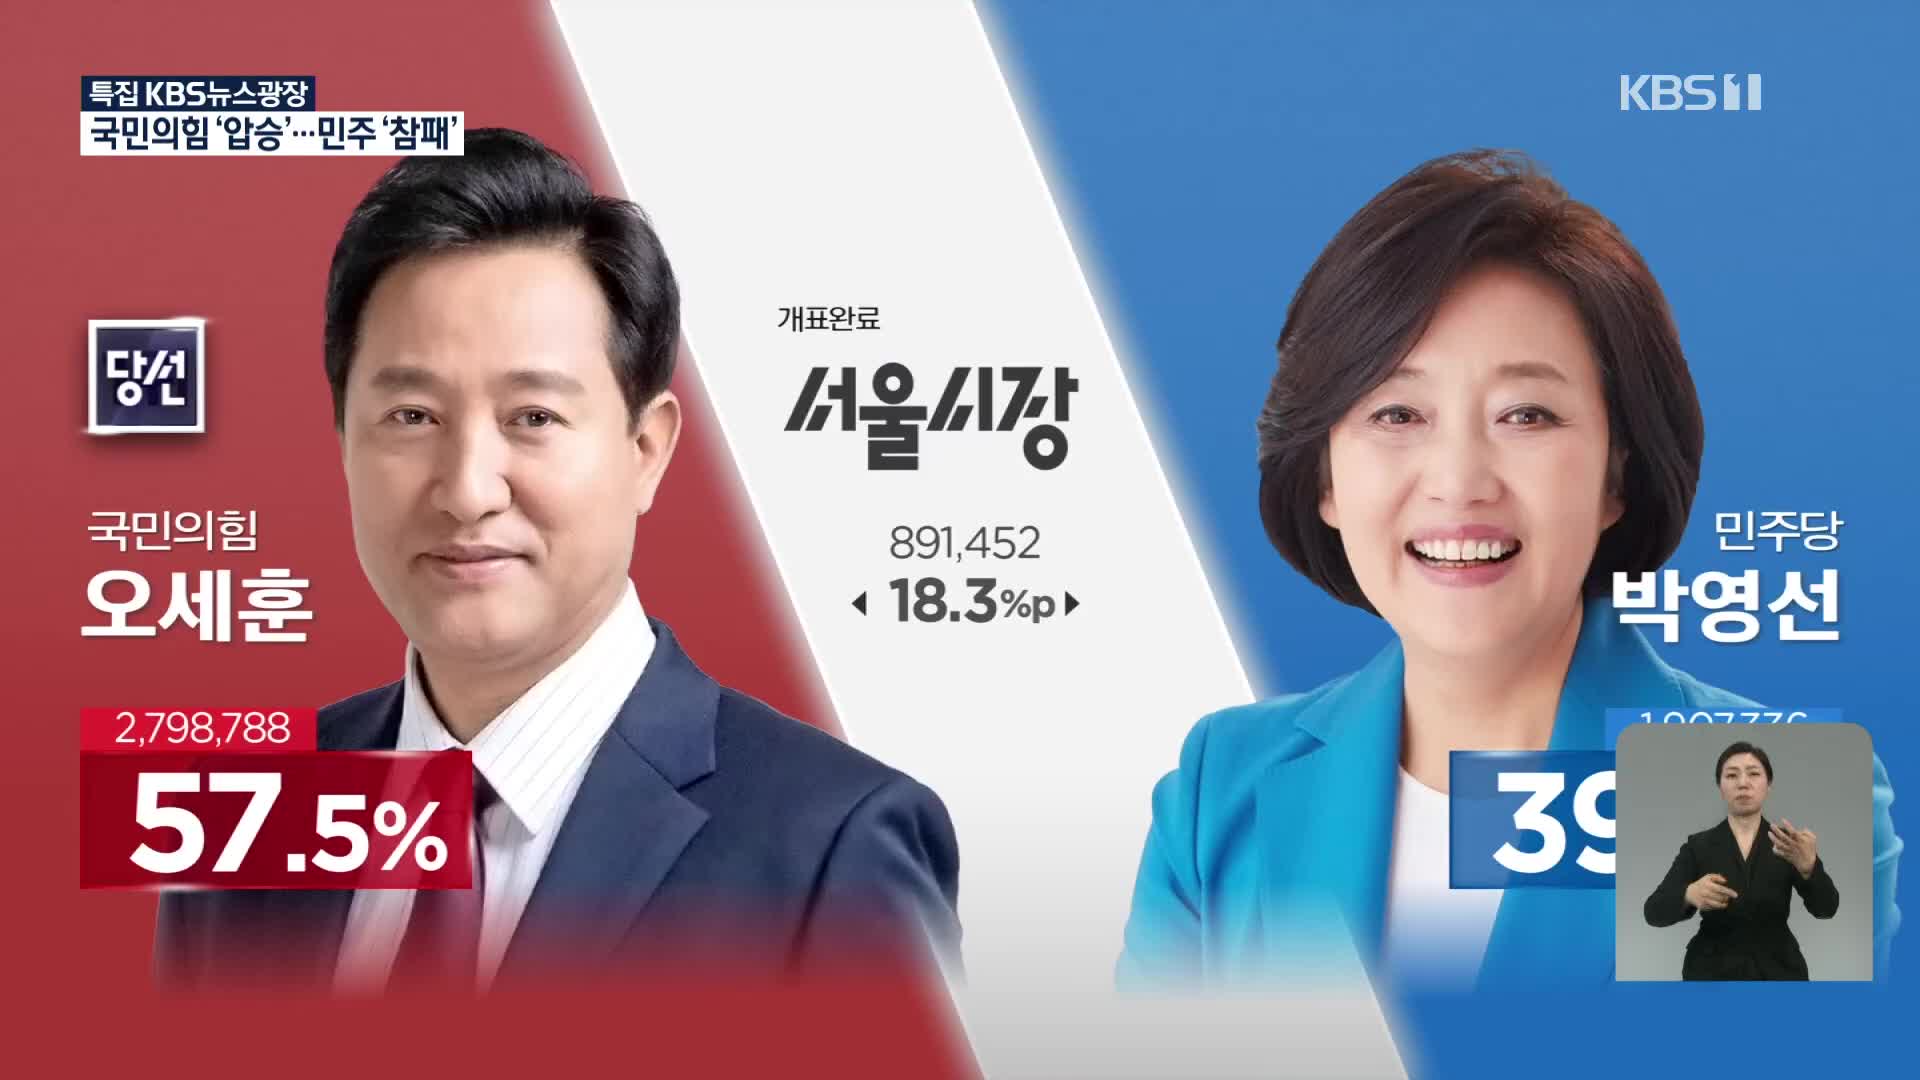 국민의힘 압승, 민주당 참패…오세훈 18.3%p·박형준 28.25%p 차이